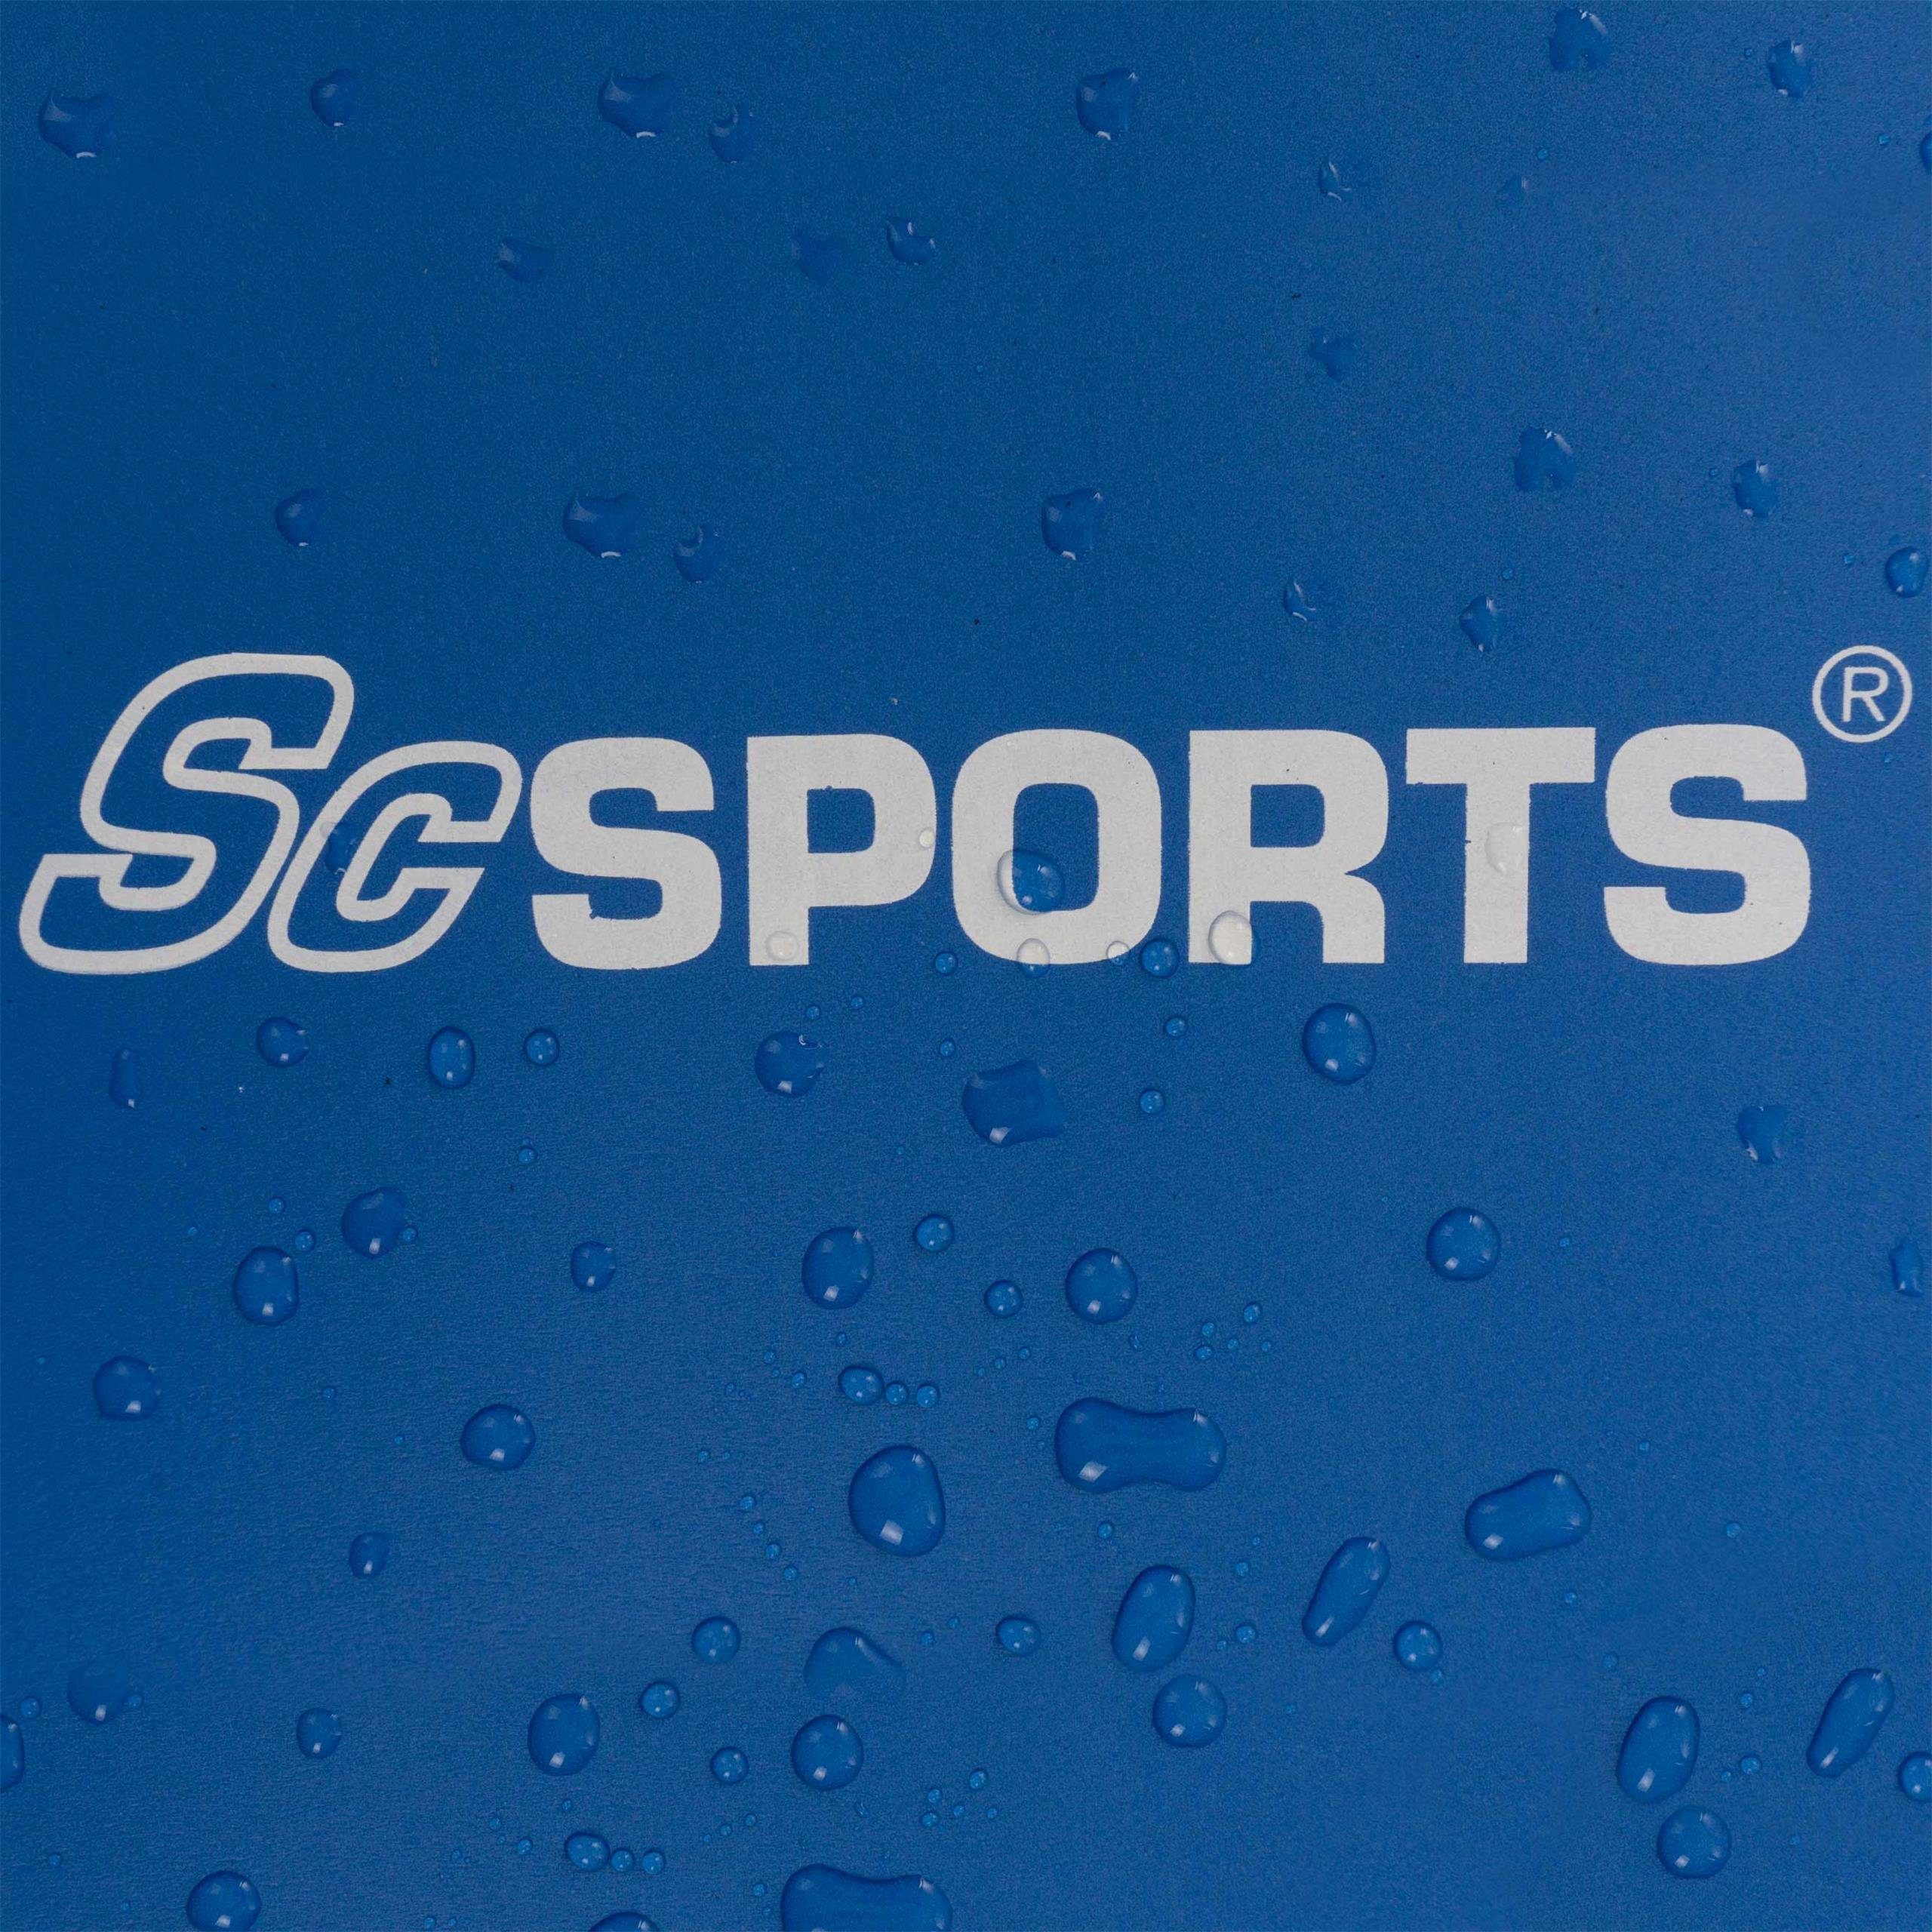 ScSPORTS® Sportmatte 190x80x1,5 cm Dunkelblau Gymnastik Tragegurt Fitness Yogamatte Matte